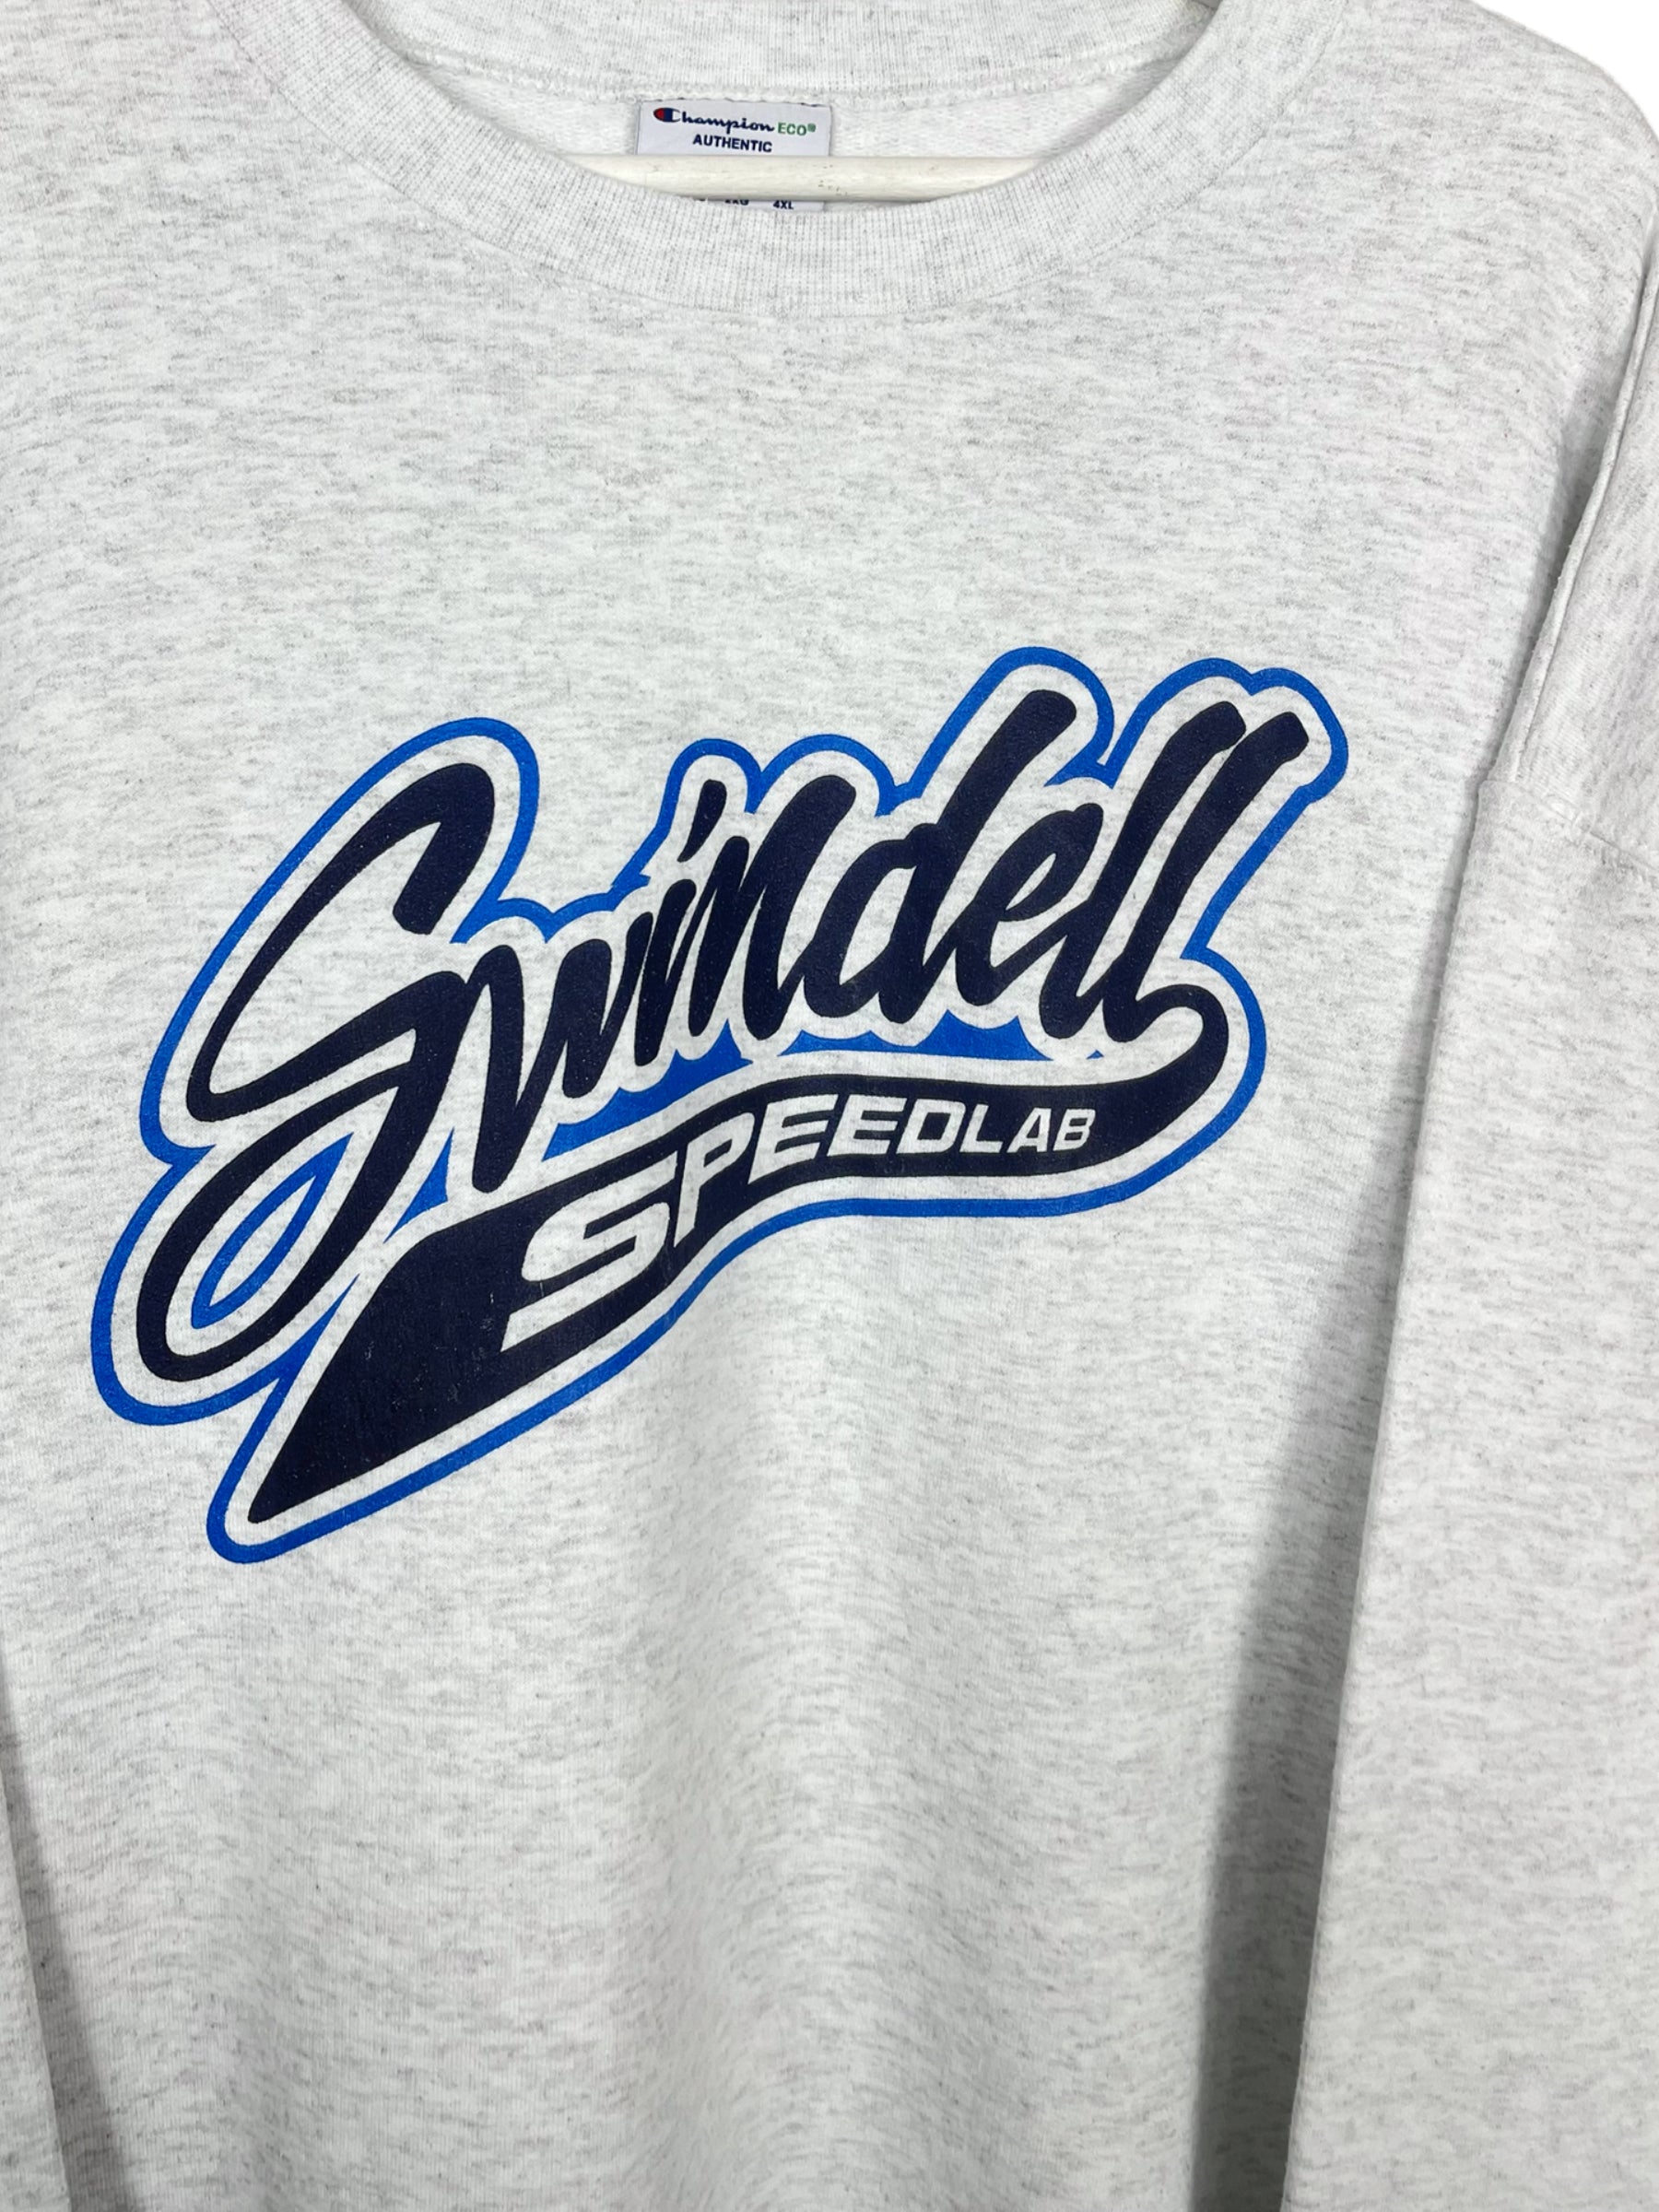  Sweatshirt Champion Sweat - Swindell Speedlab - XXL - PLOMOSTORE